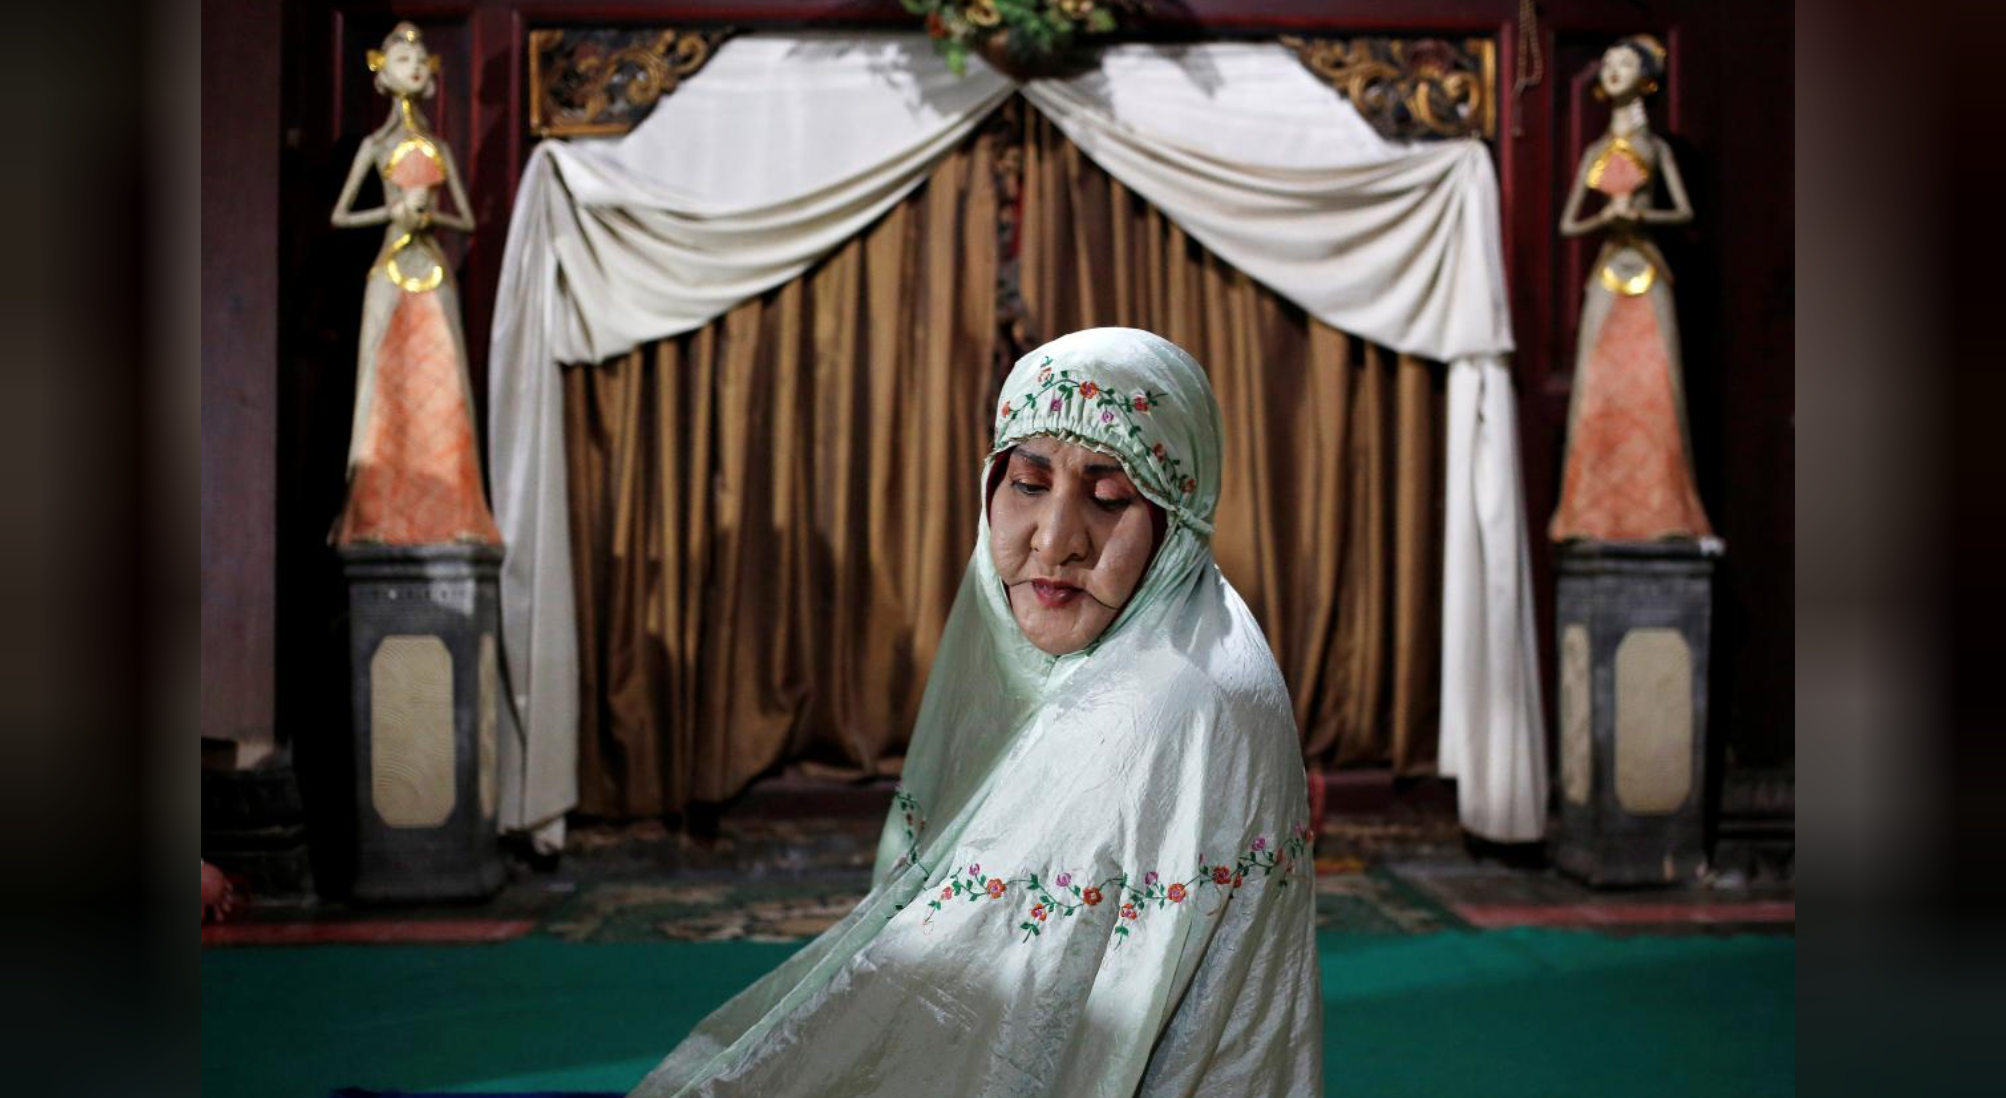 In Indonesia, transgender women find haven in Islamic boarding school